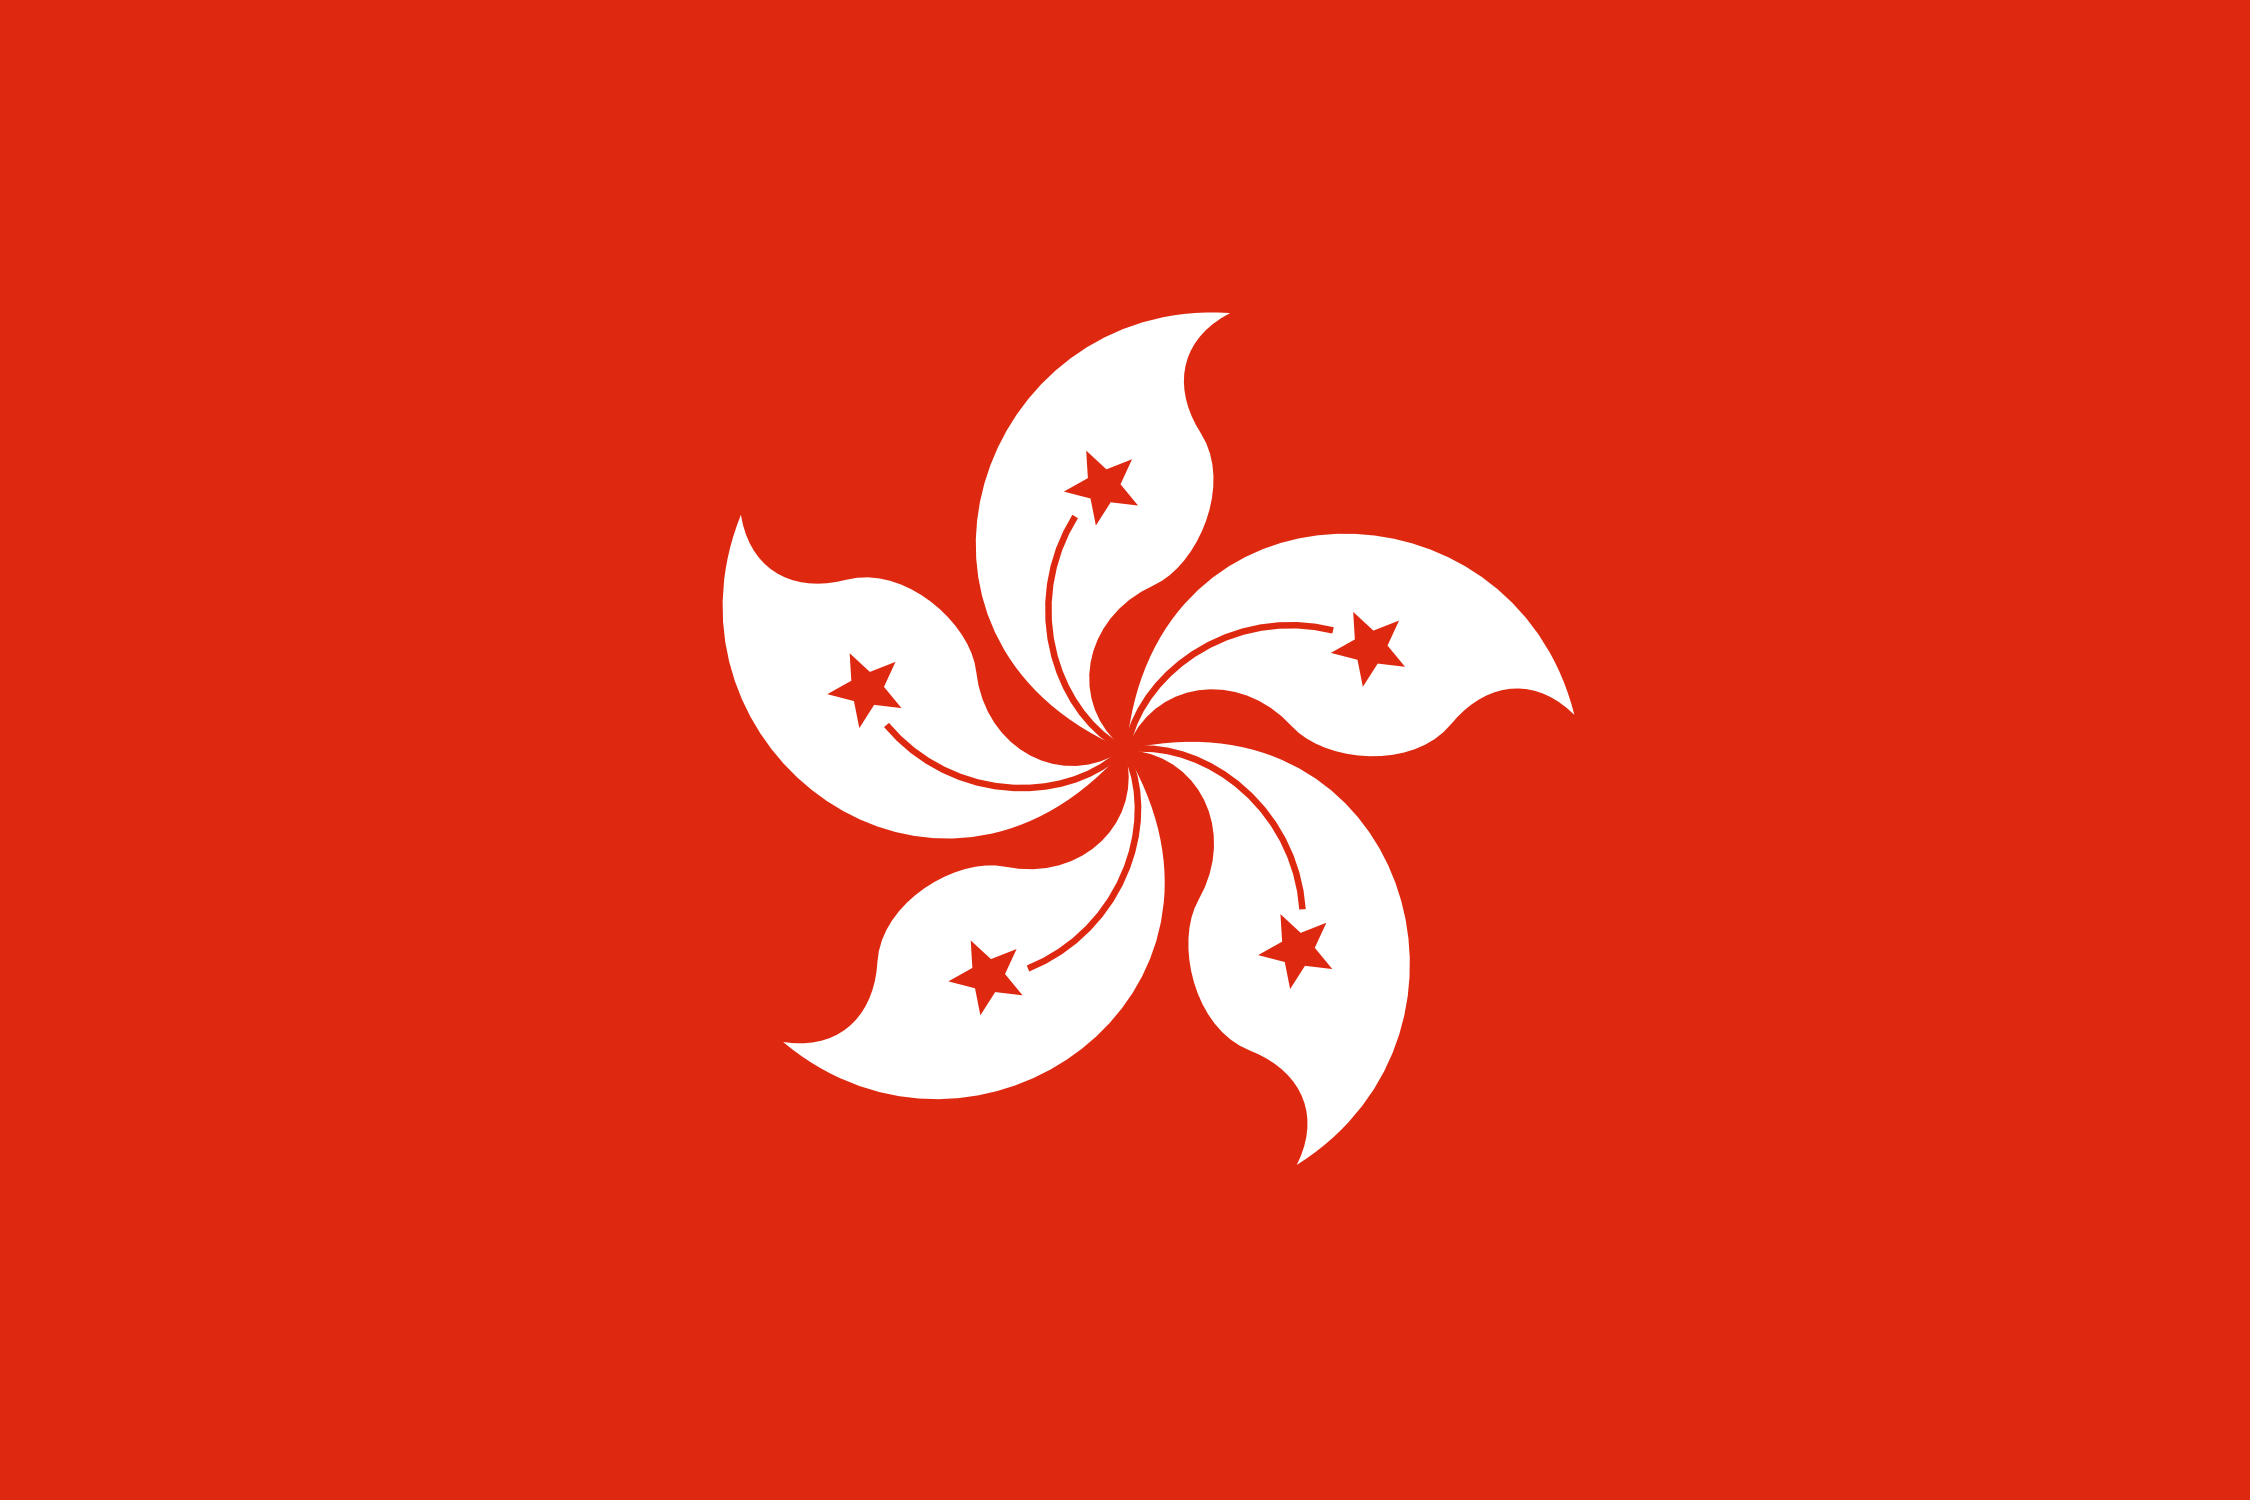 پرچم هنگ کنگ